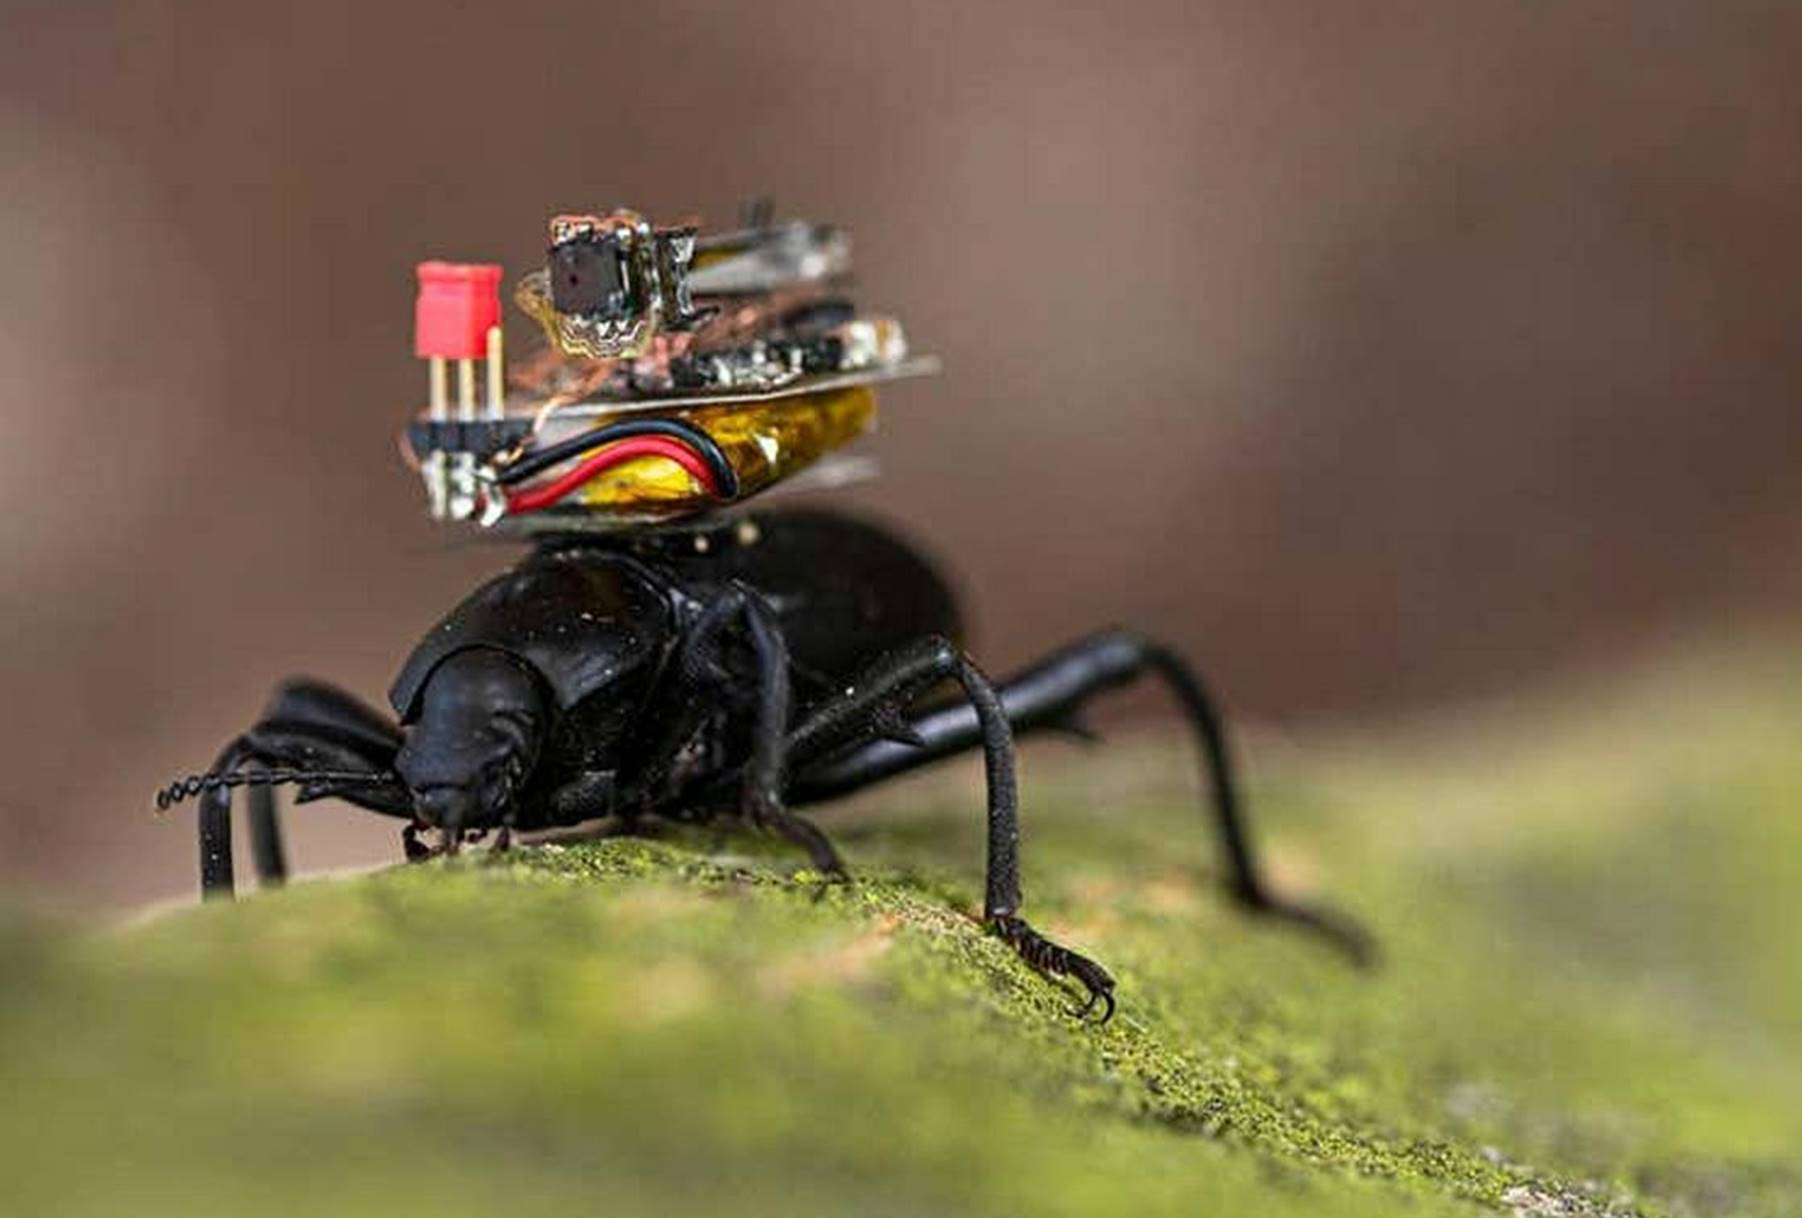 Esses besouros carregam uma câmera nas costas que envia imagem para um celular